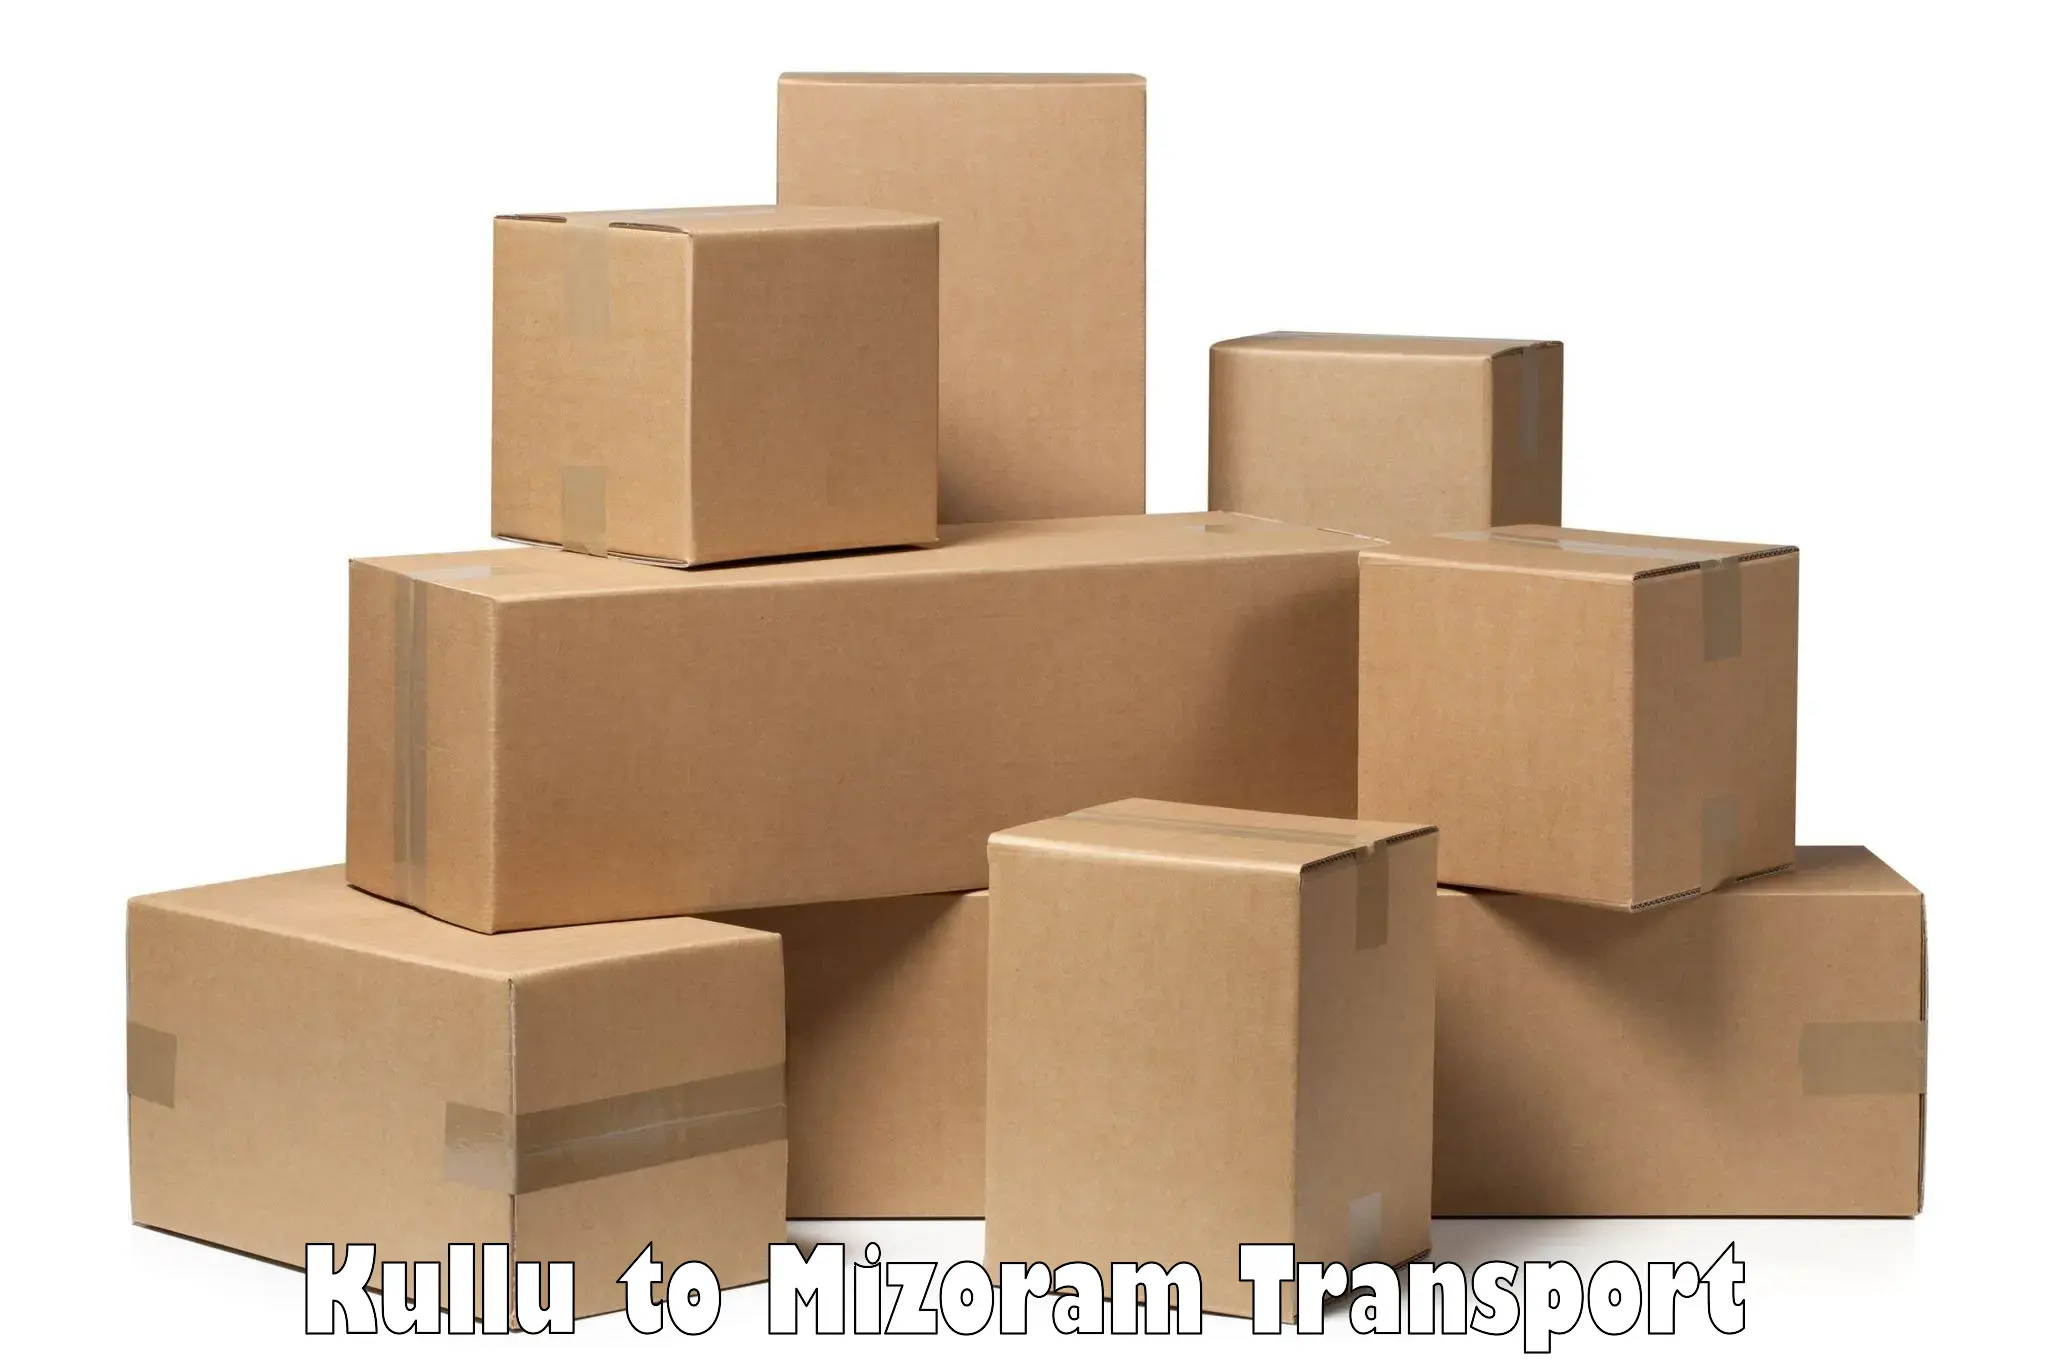 All India transport service Kullu to NIT Aizawl